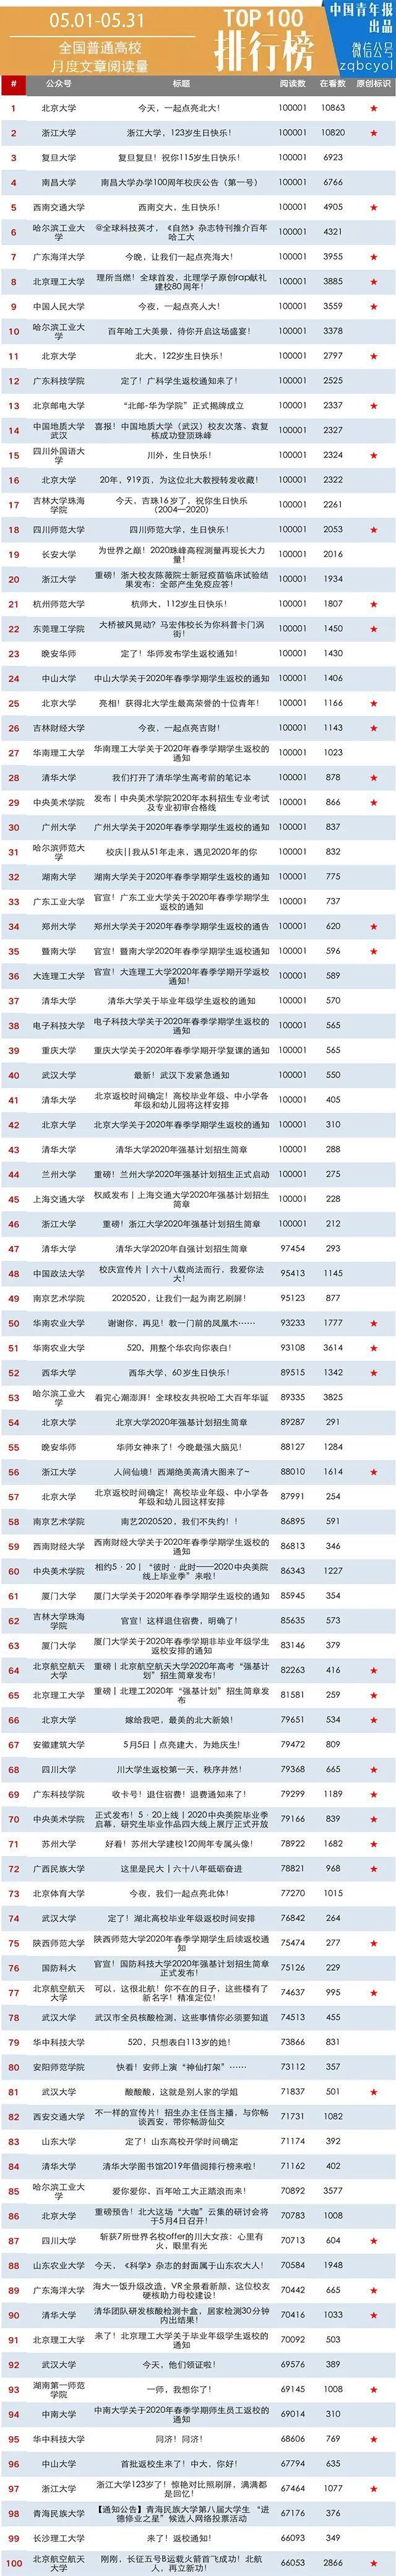 月榜 | 中国大学官微百强（2020年5月普通高校公号）